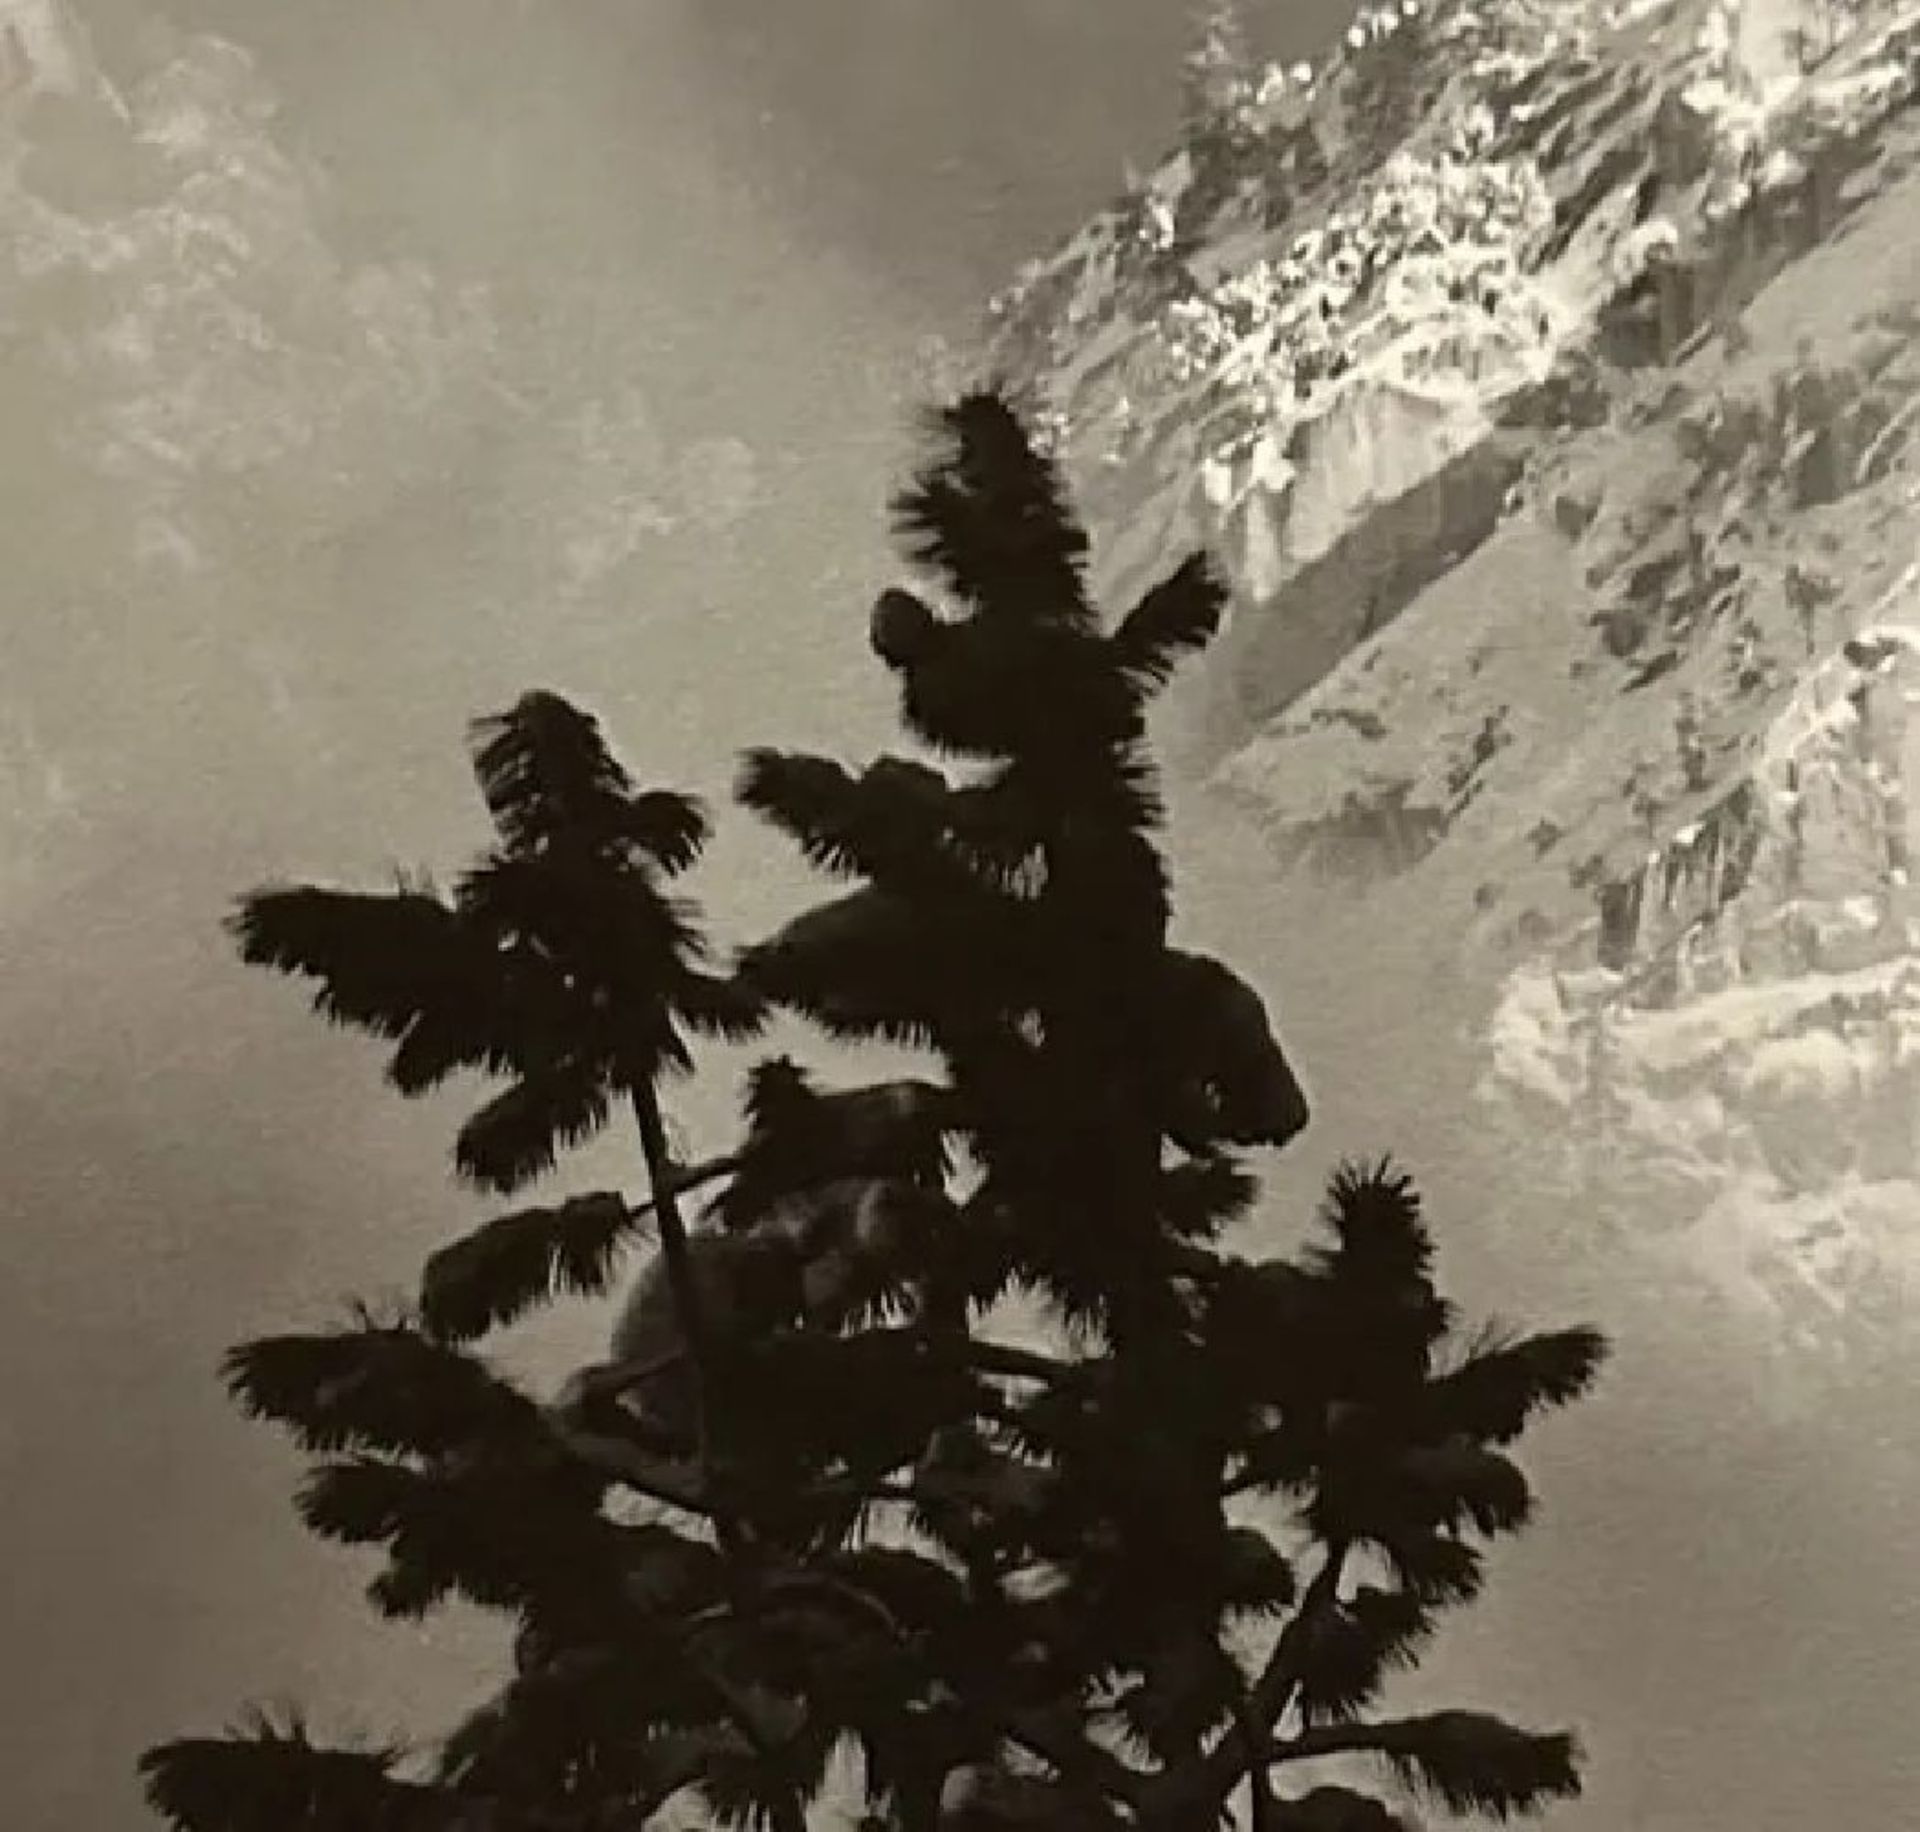 Ansel Adams "Eagle Peak" Print - Image 6 of 6